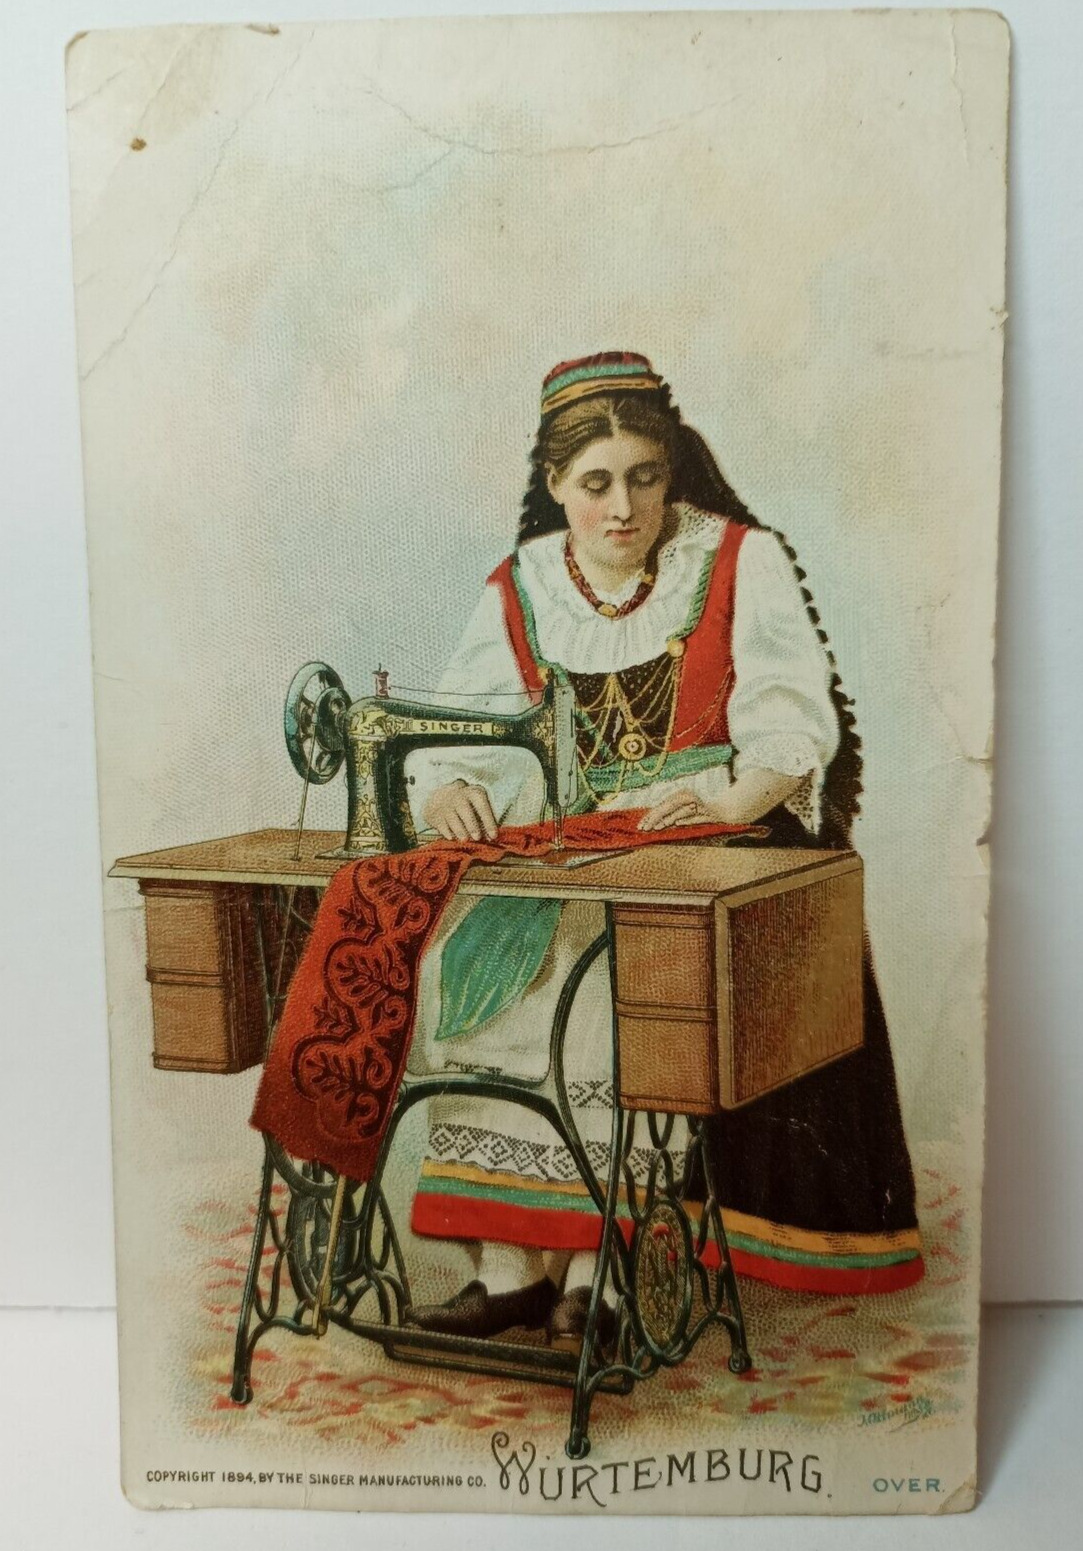 Wurtemburg 1894 Trade Card Singer Manufacturing Co Bavarian Dress Woman